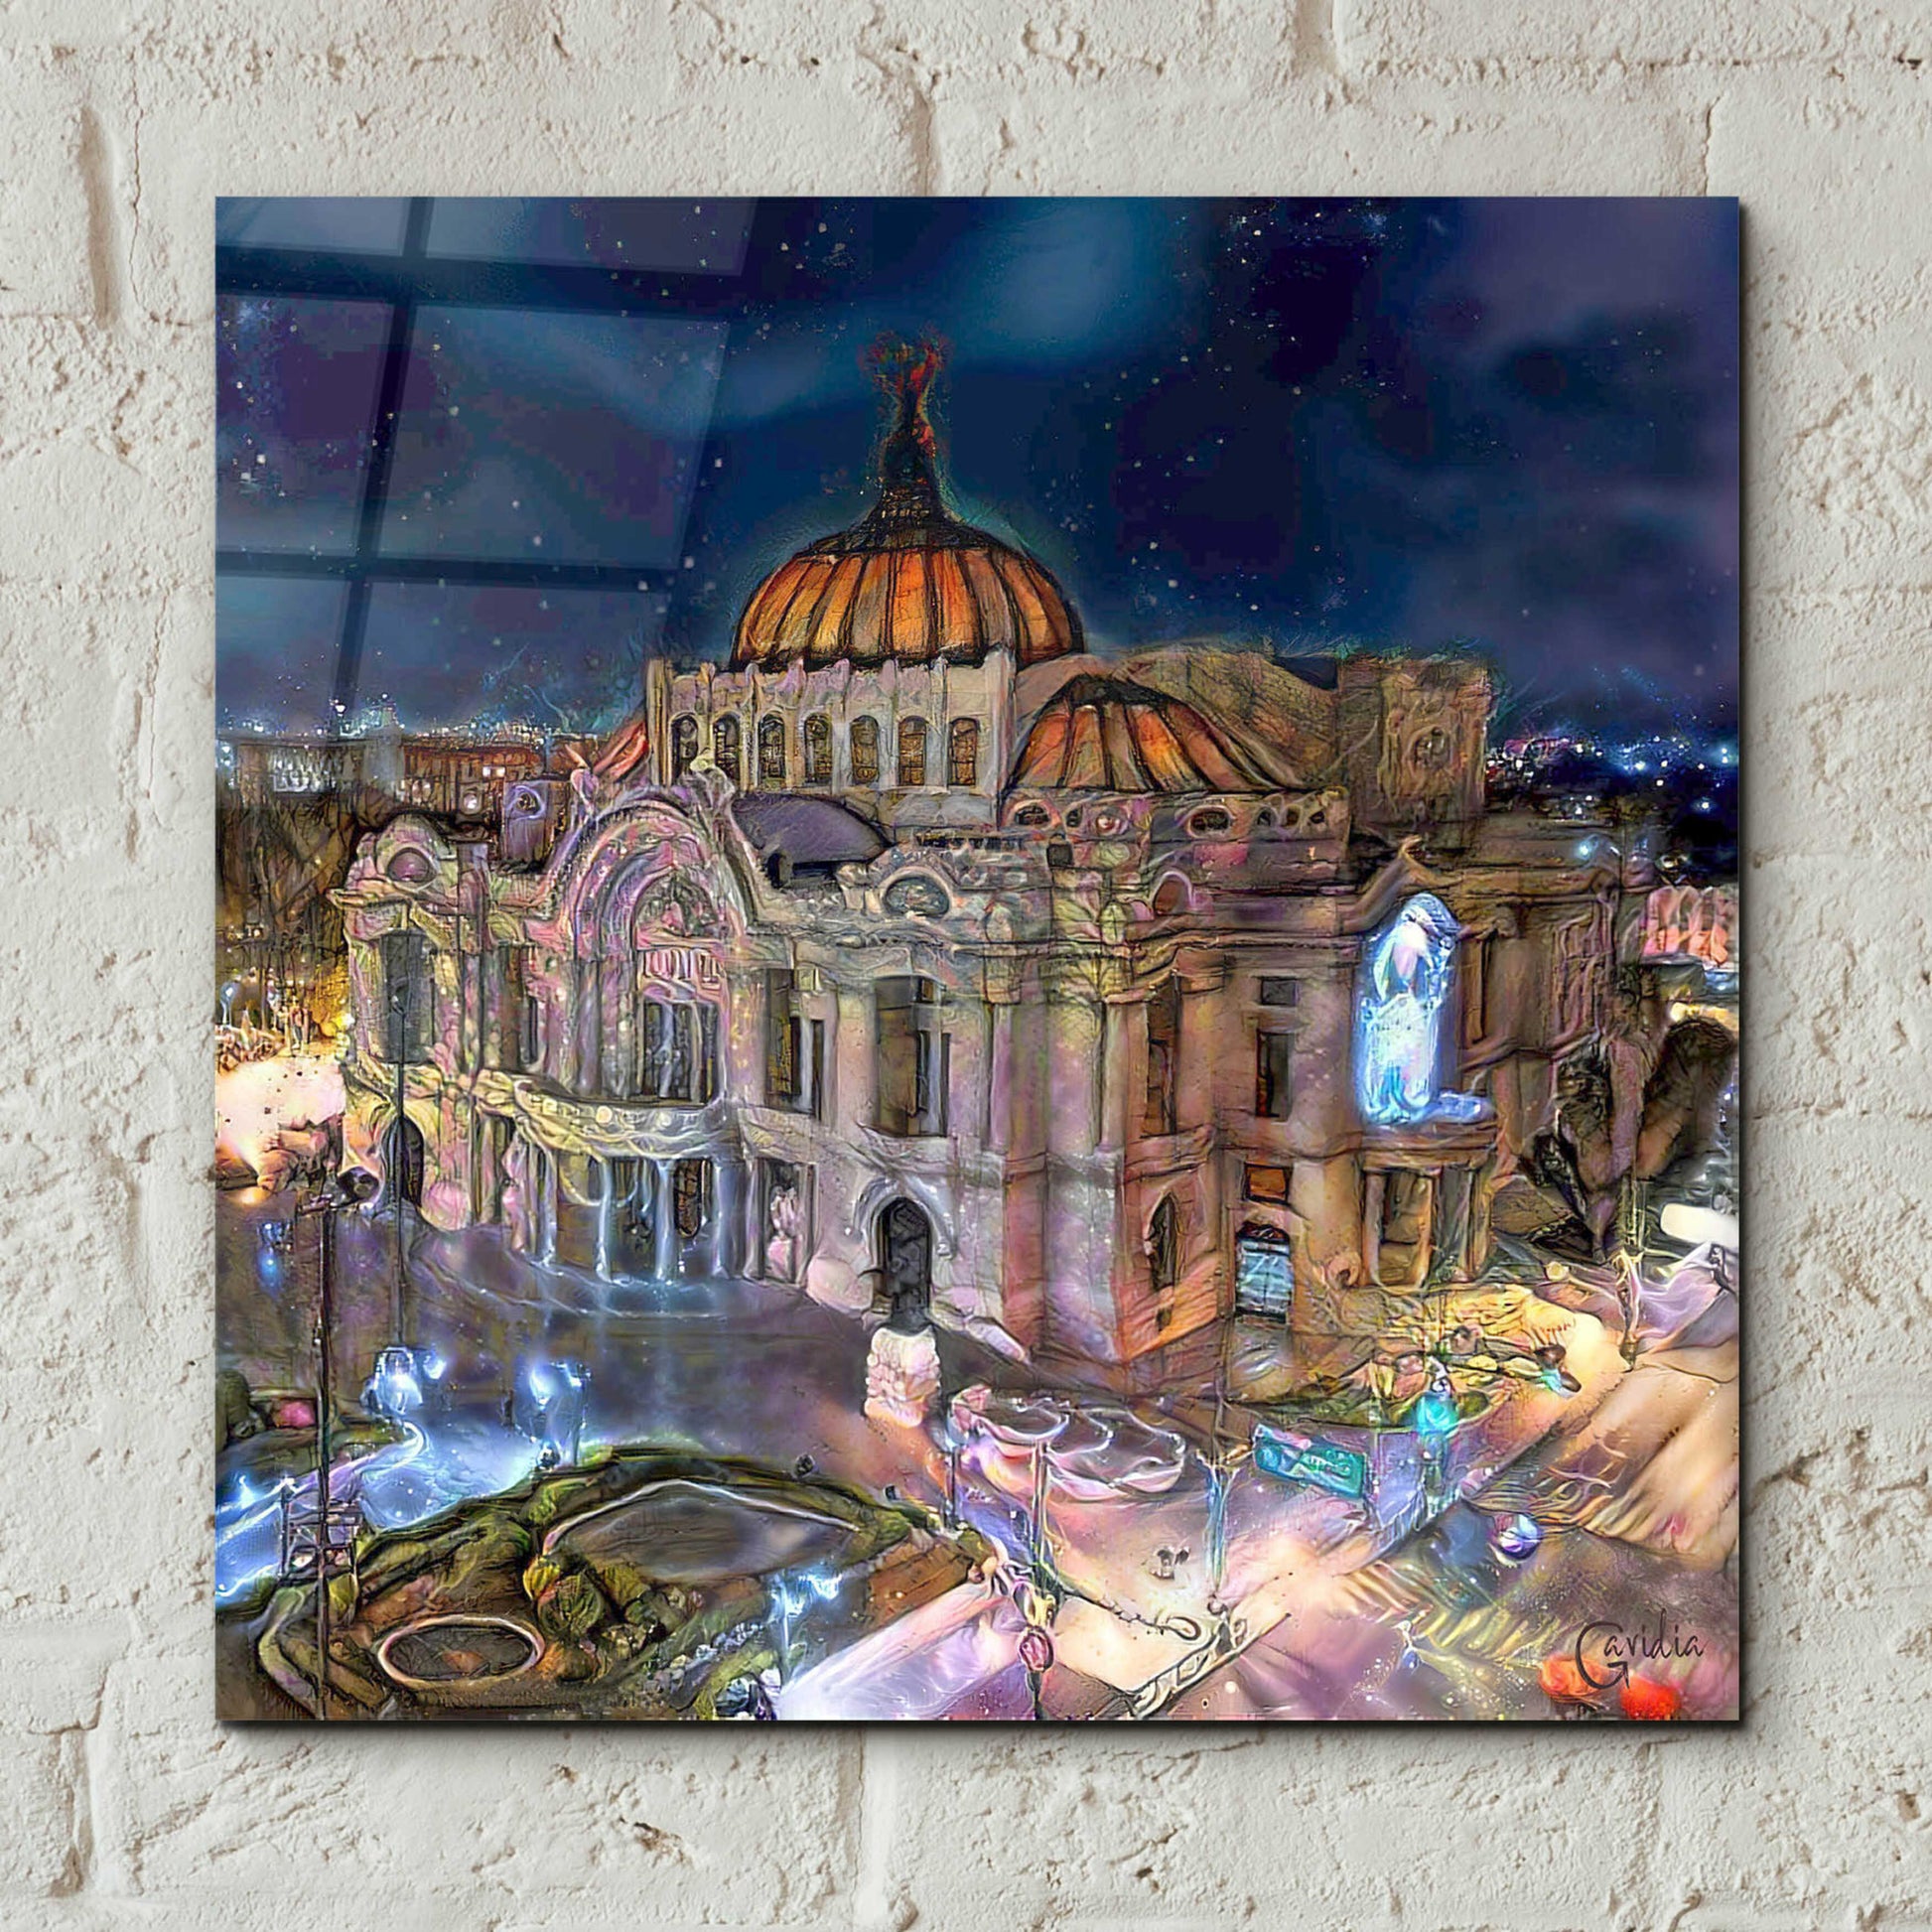 Epic Art 'Mexico City Palace of Fine Arts at night' by Pedro Gavidia, Acrylic Glass Wall Art,12x12